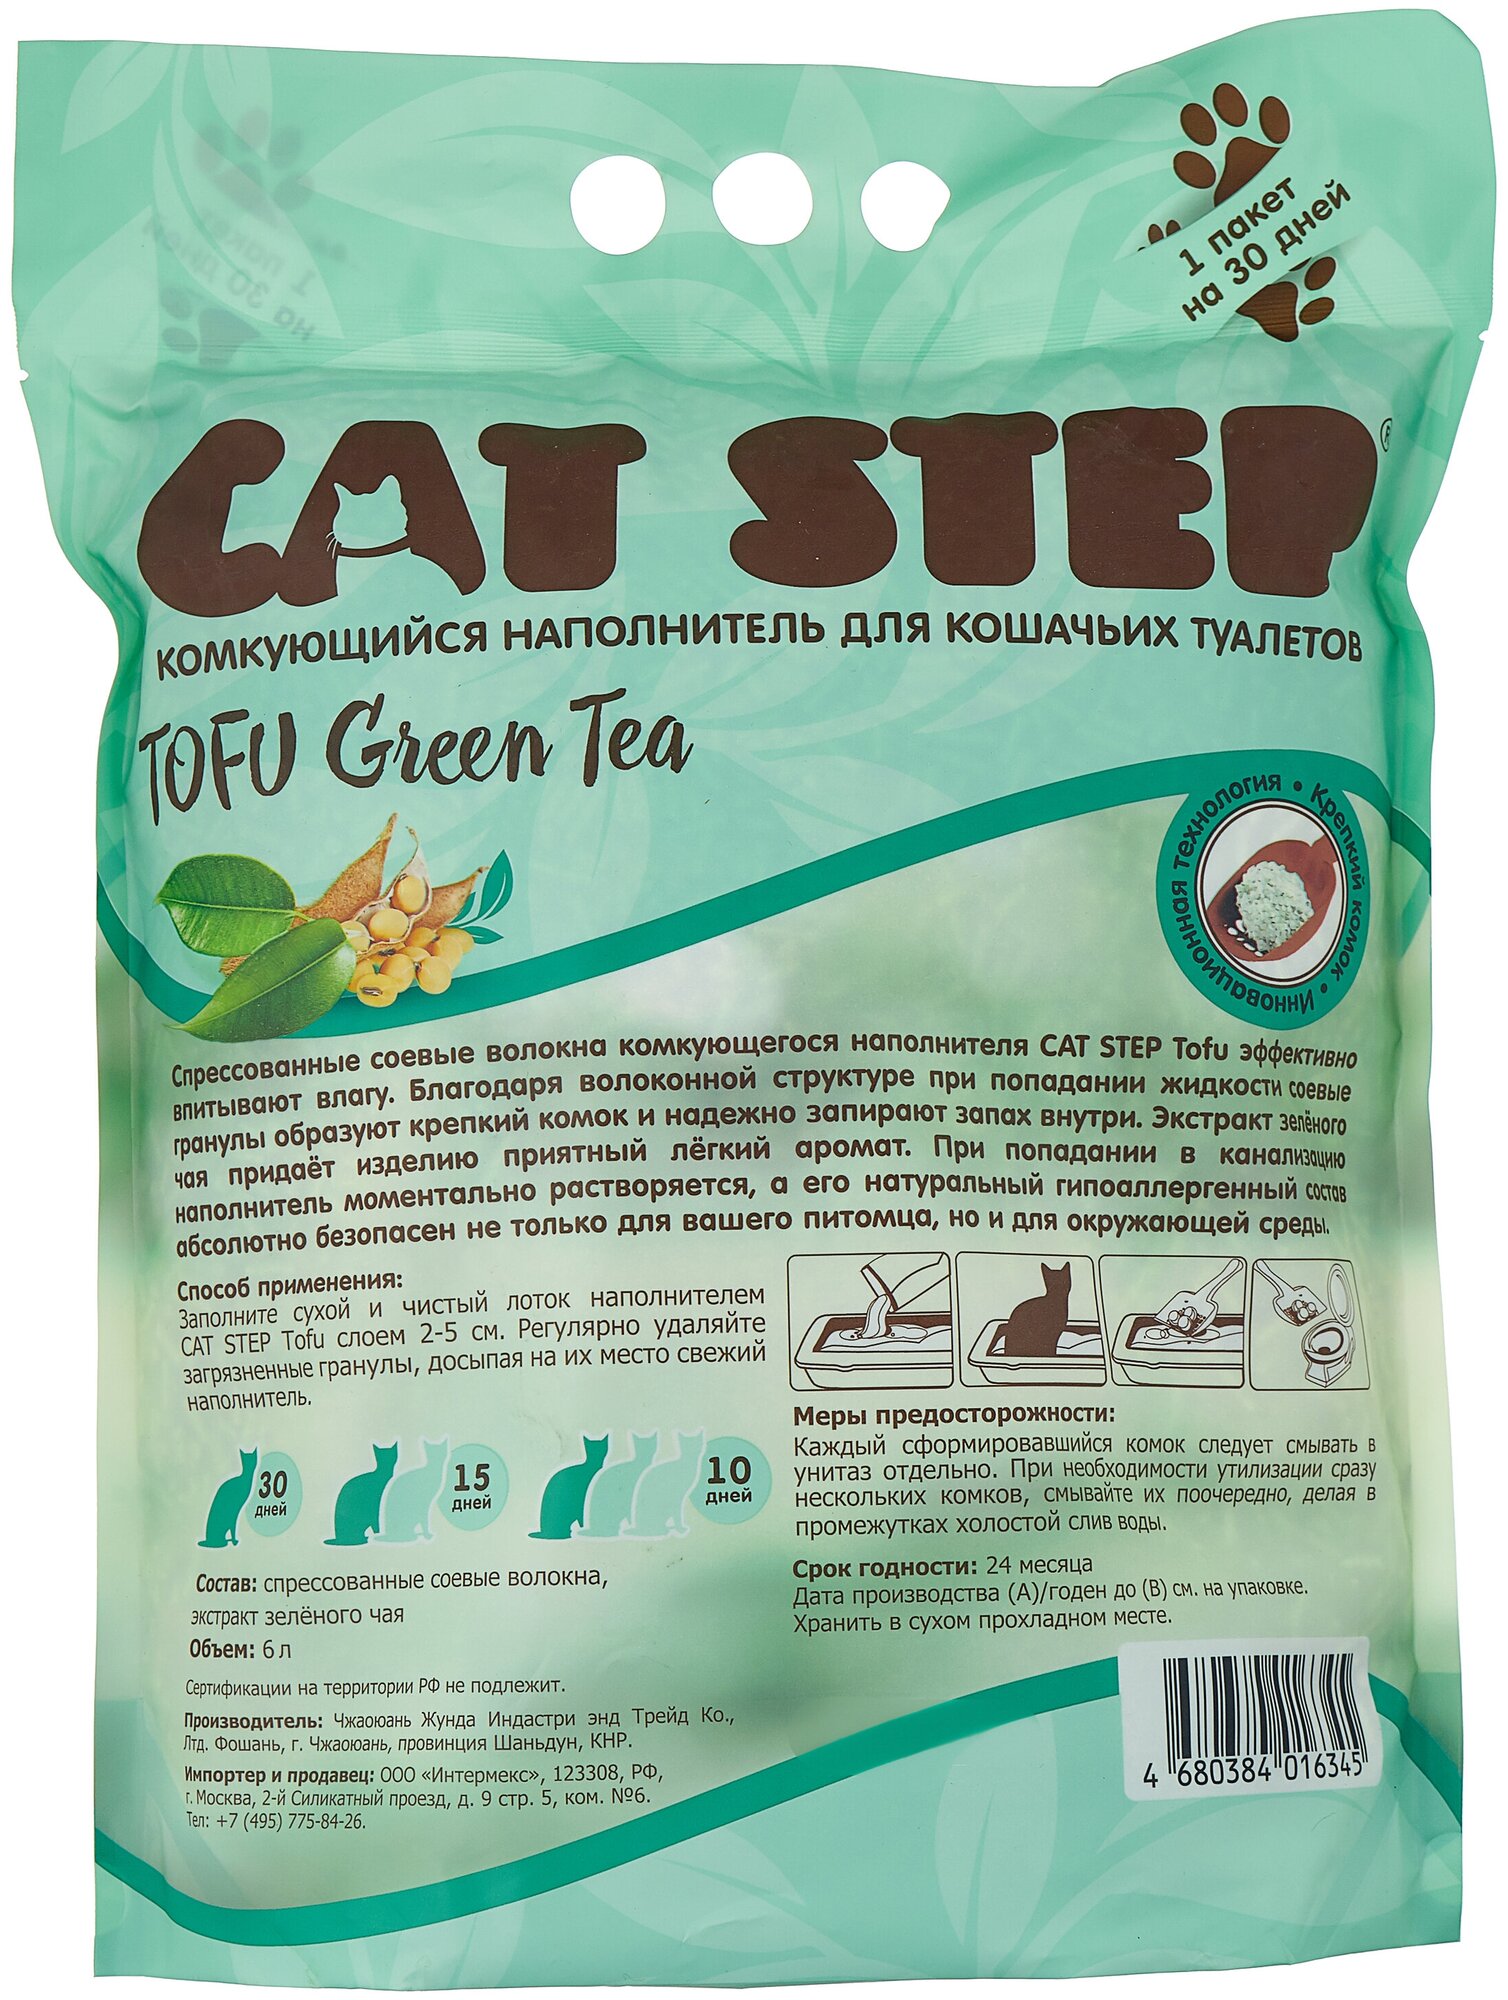 Комкующийся наполнитель Cat Step Tofu Green Tea, 6л, 1 шт.